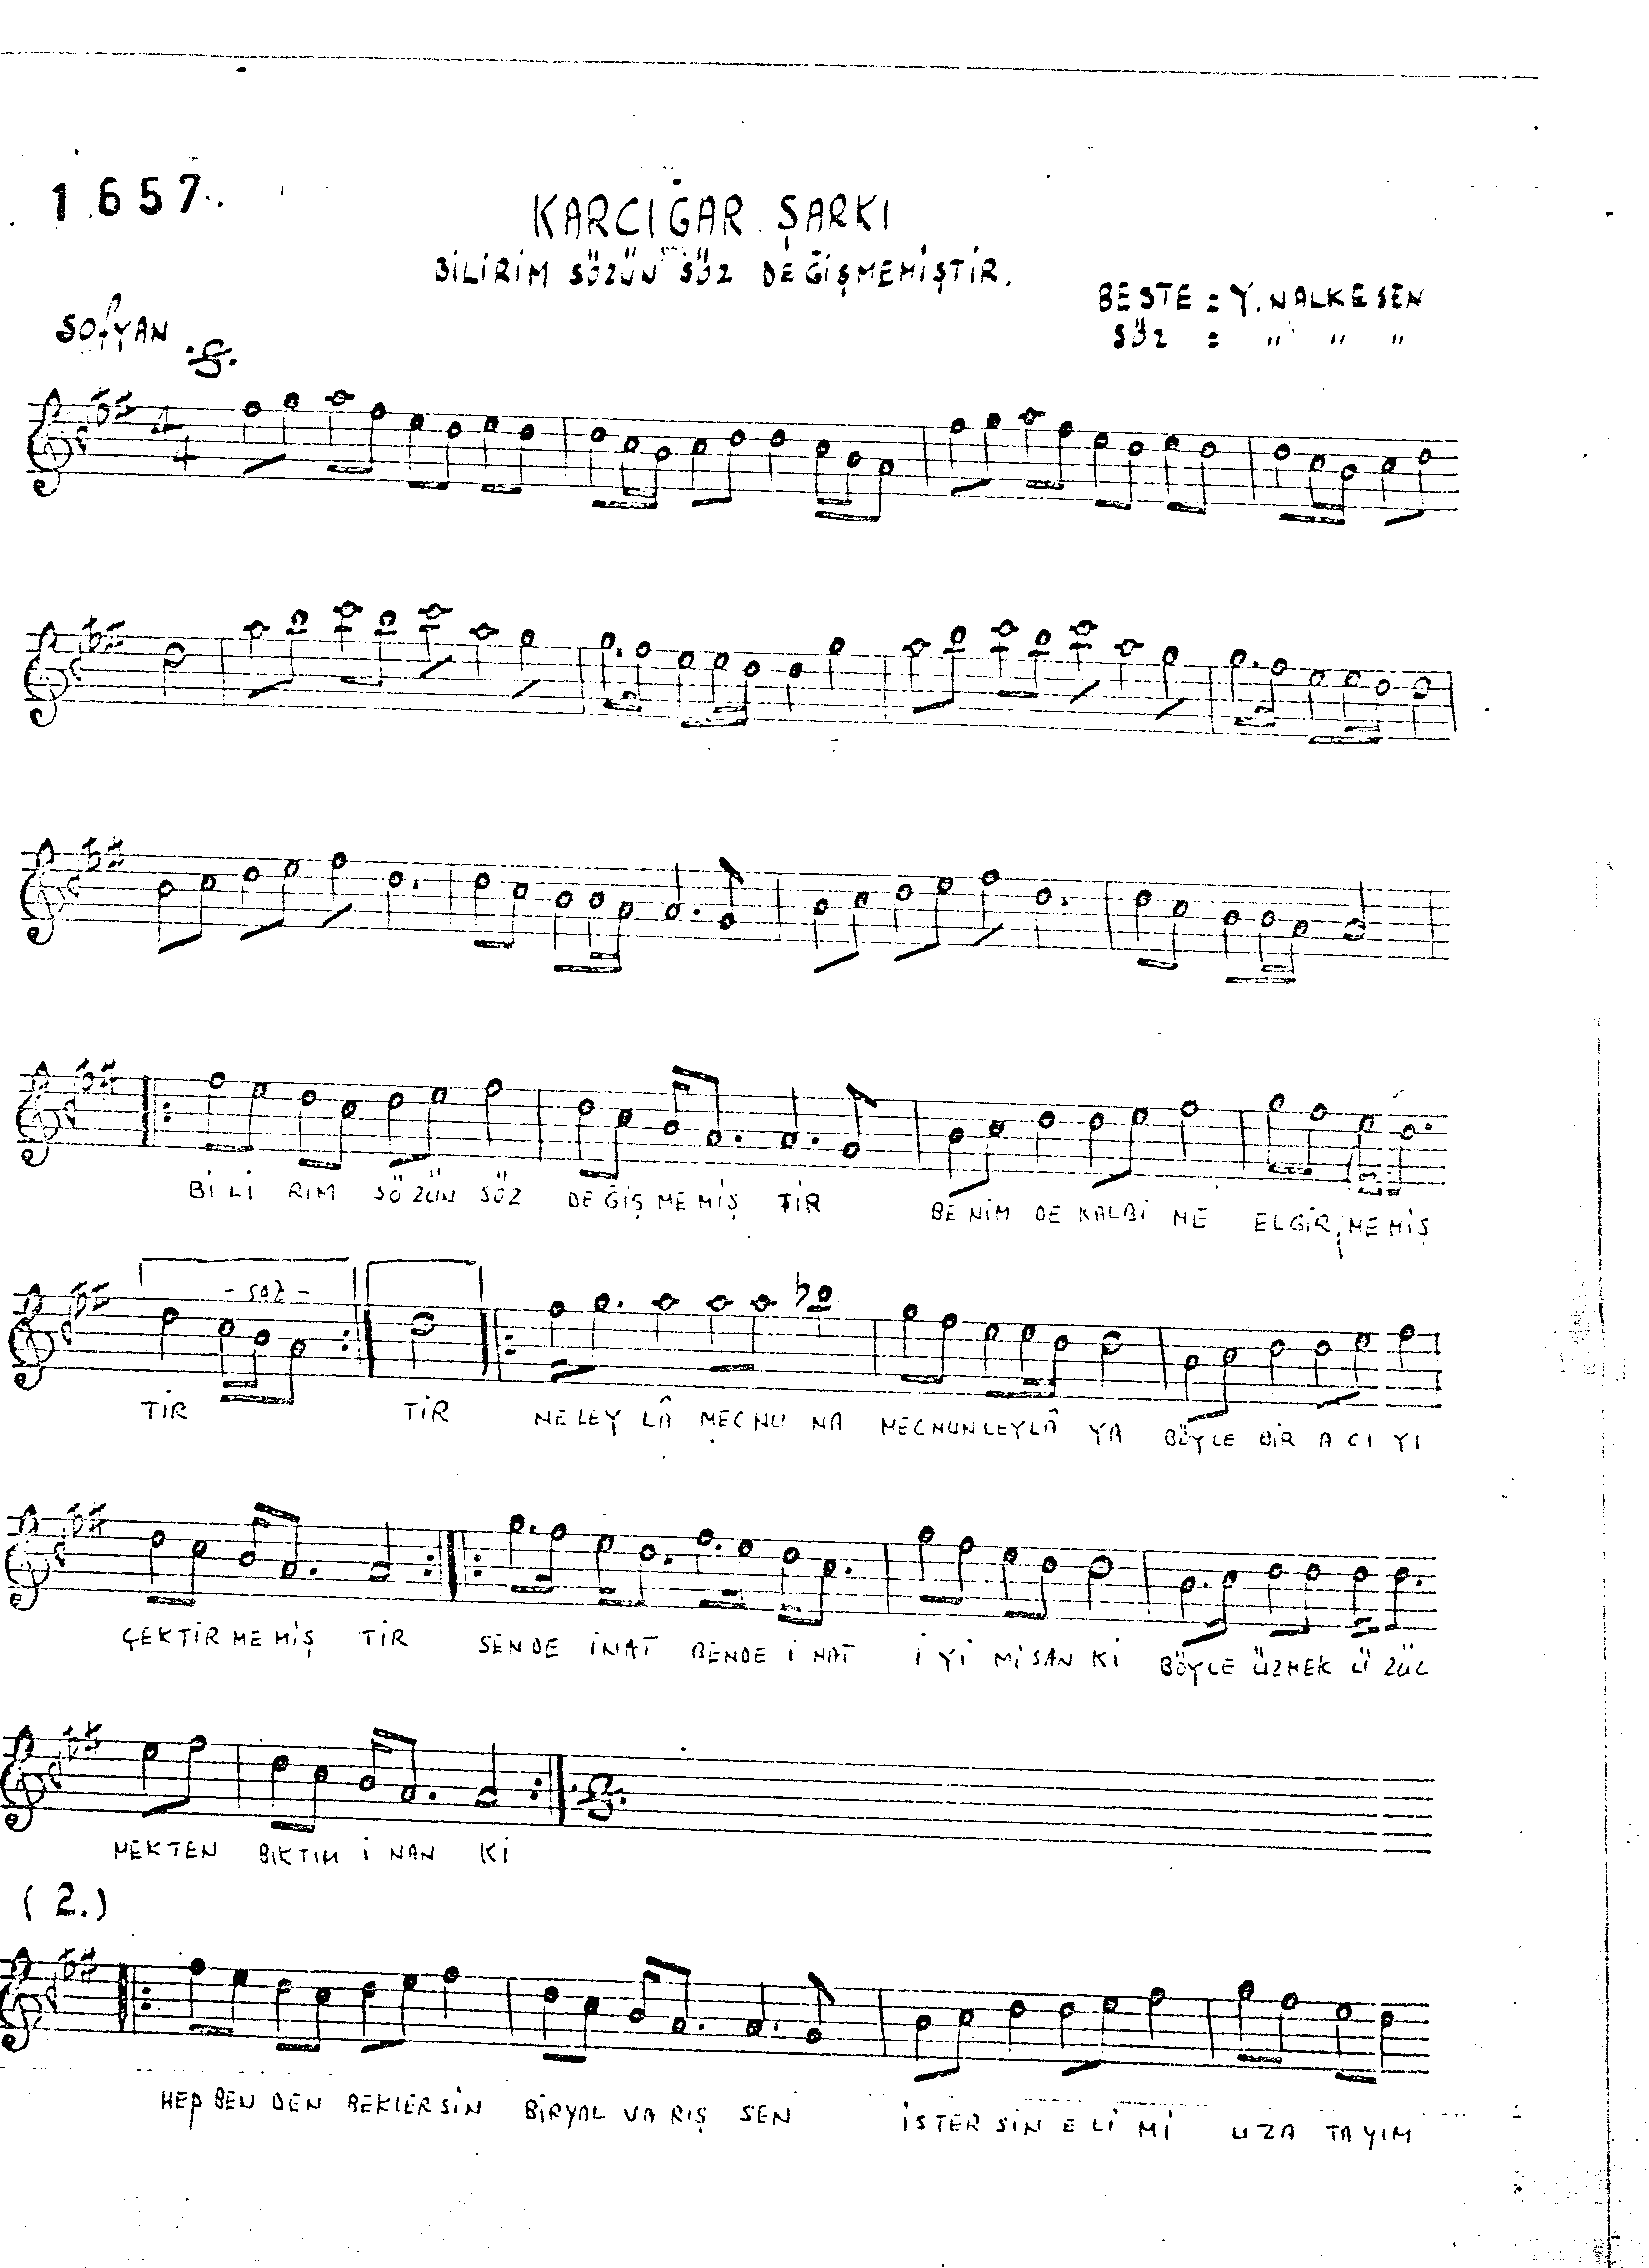 Karcığar - Şarkı - Yusuf Nalkesen - Sayfa 1